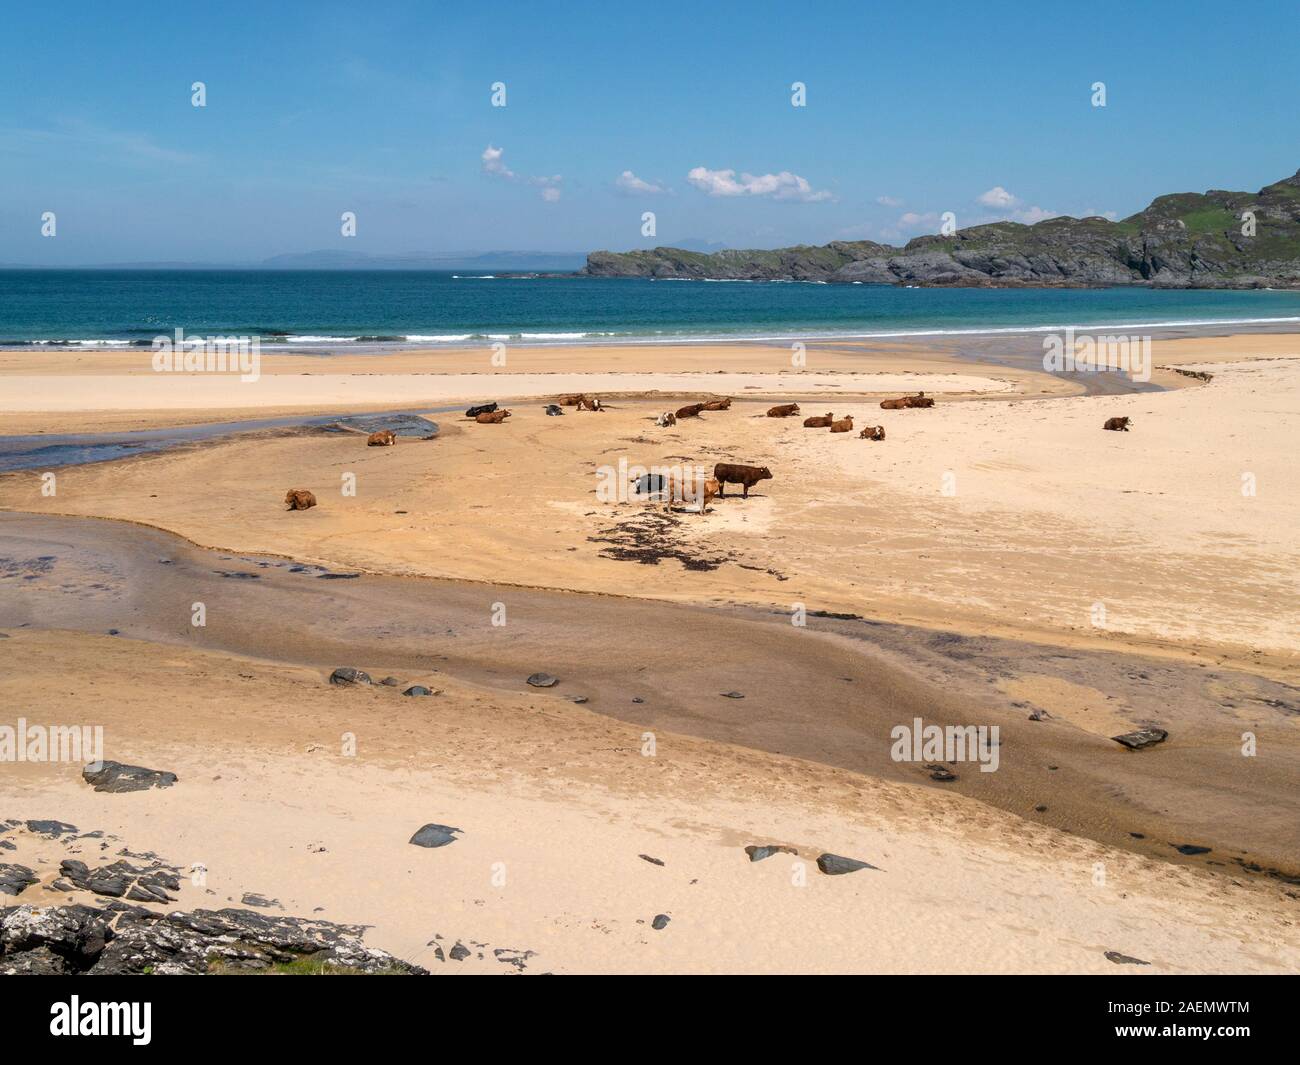 Kühe und Kälber auf schottischen Strand, Kiloran, Insel Colonsay, Schottland, Großbritannien Stockfoto